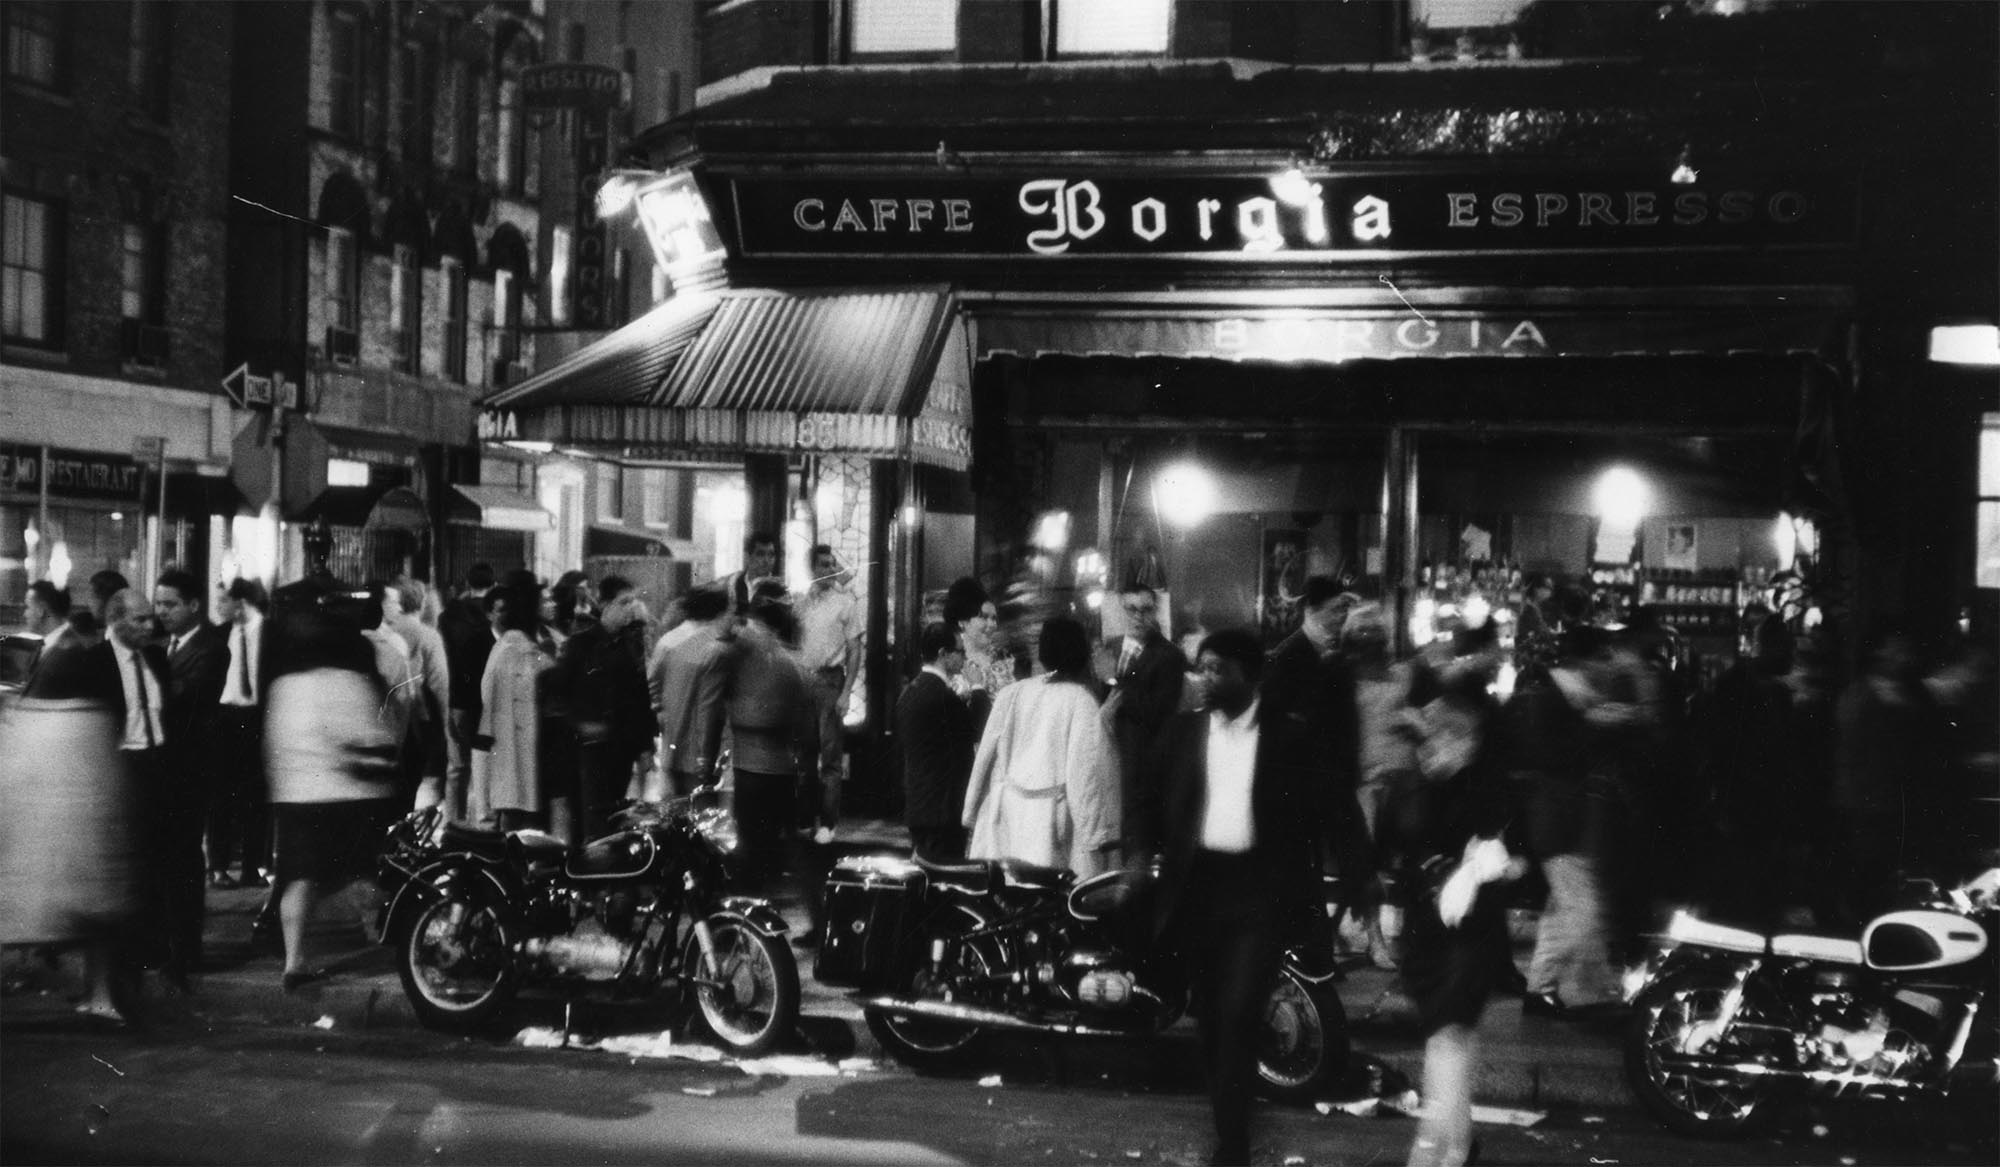 Fora do Caffe Borgia, em MacDougal e Bleecker Sts., 1966